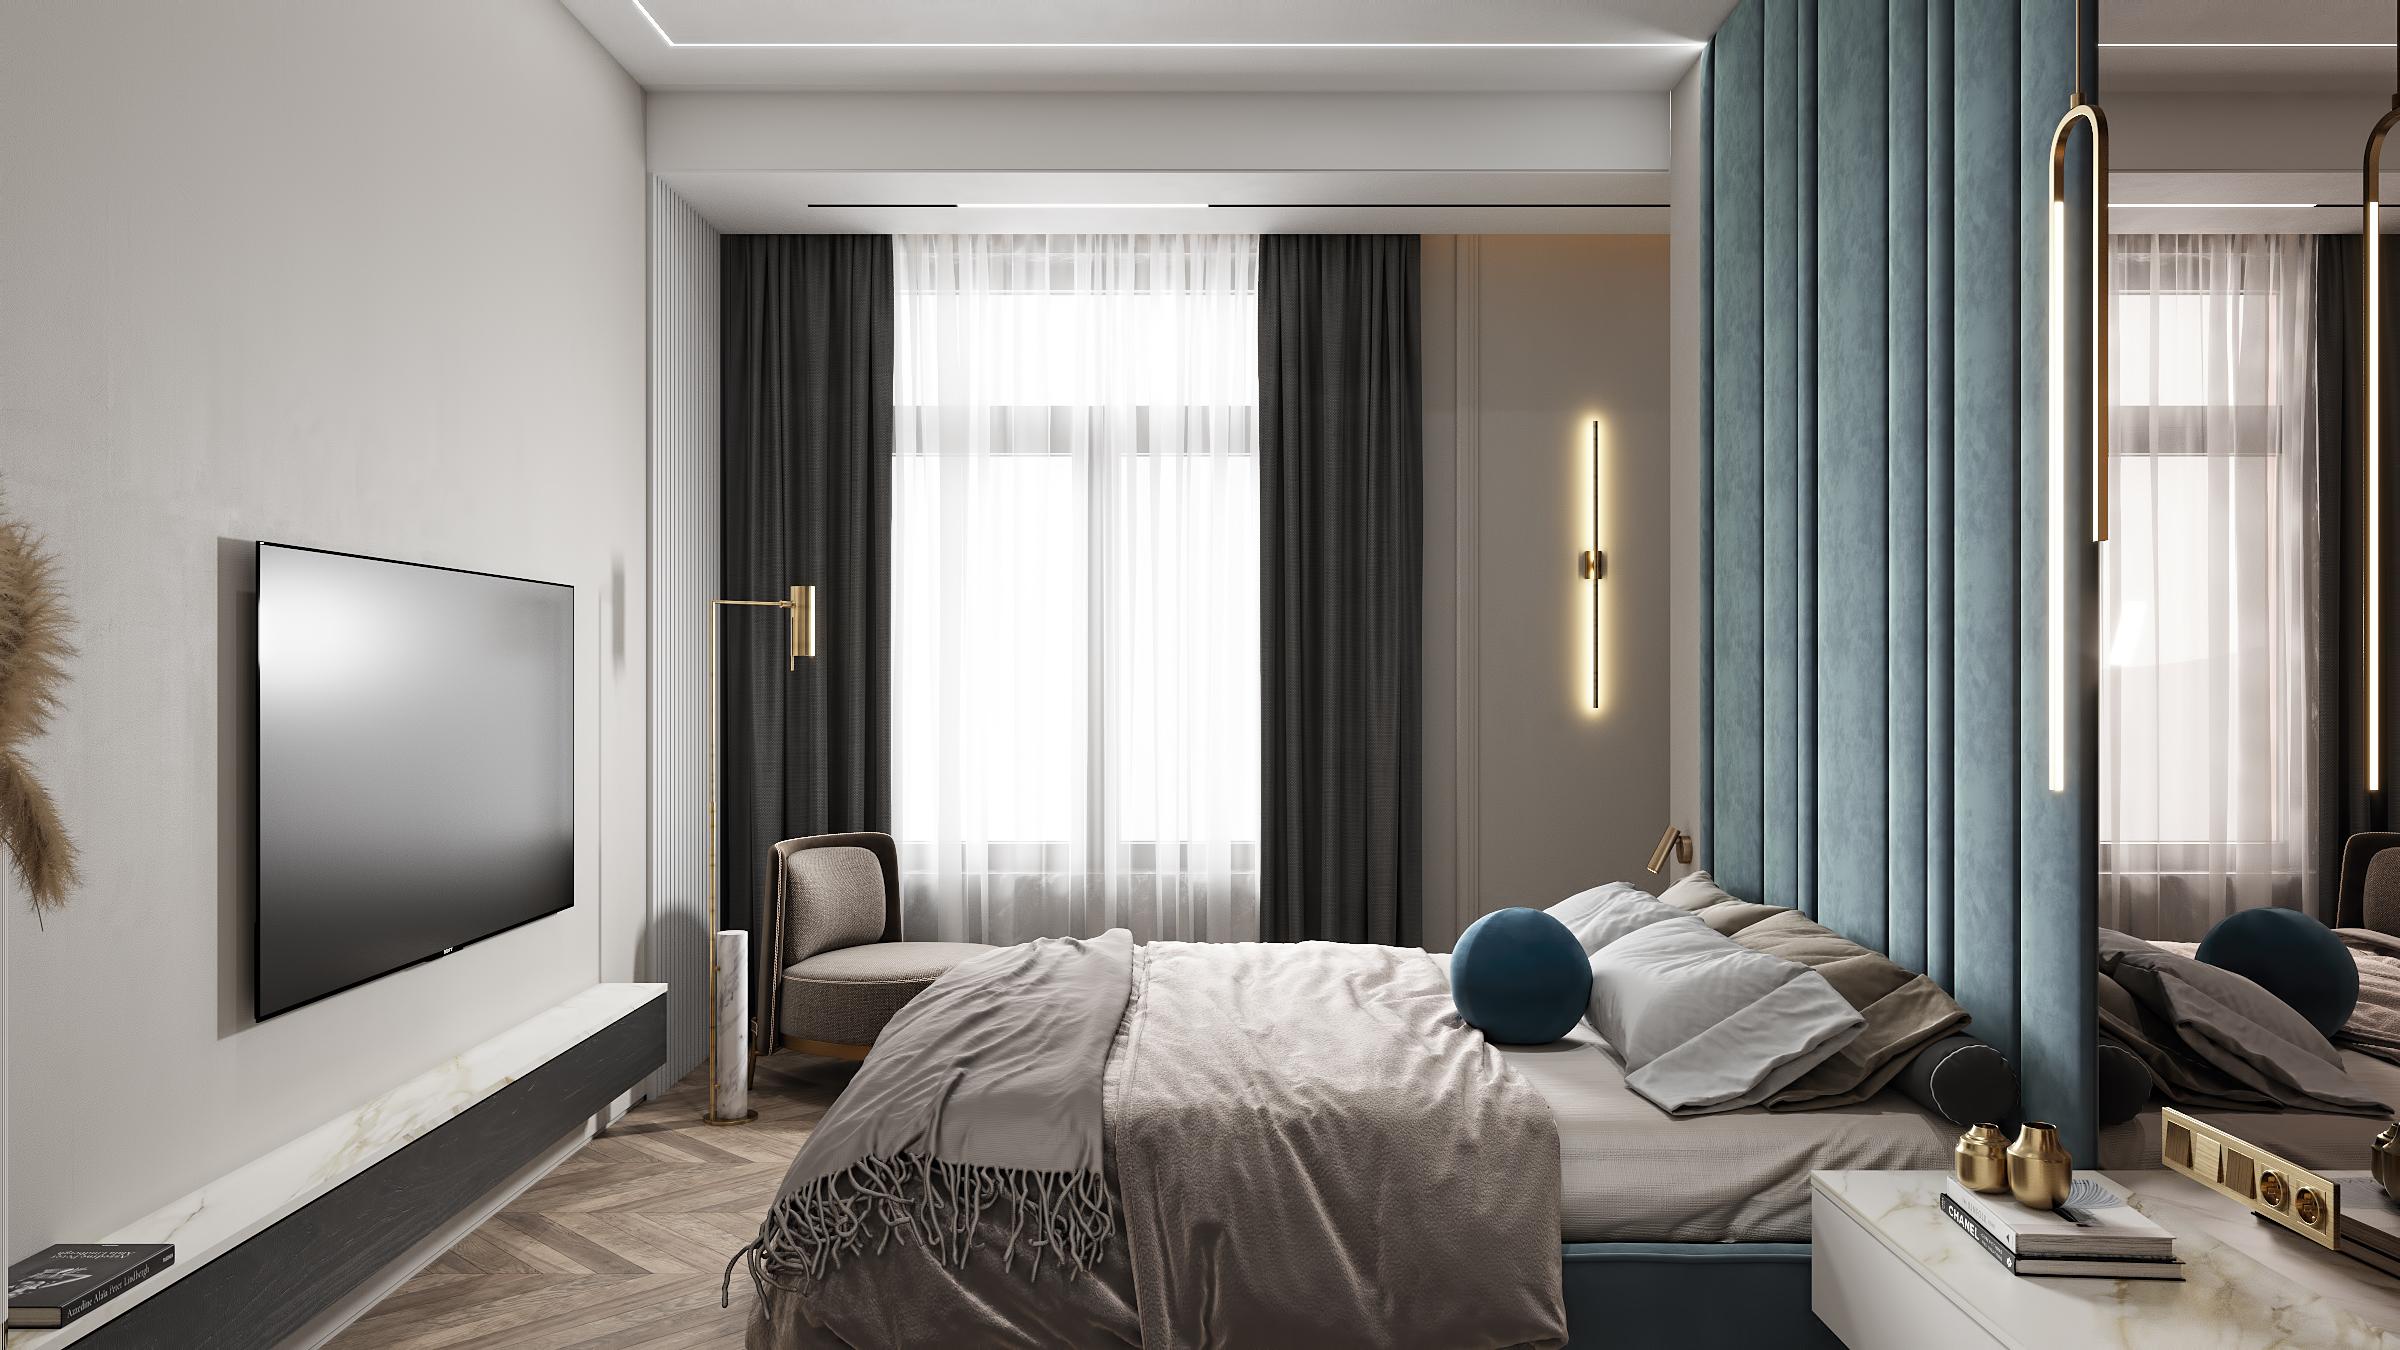 Интерьер спальни с бра над кроватью, подсветкой настенной, подсветкой светодиодной, светильниками над кроватью и с подсветкой